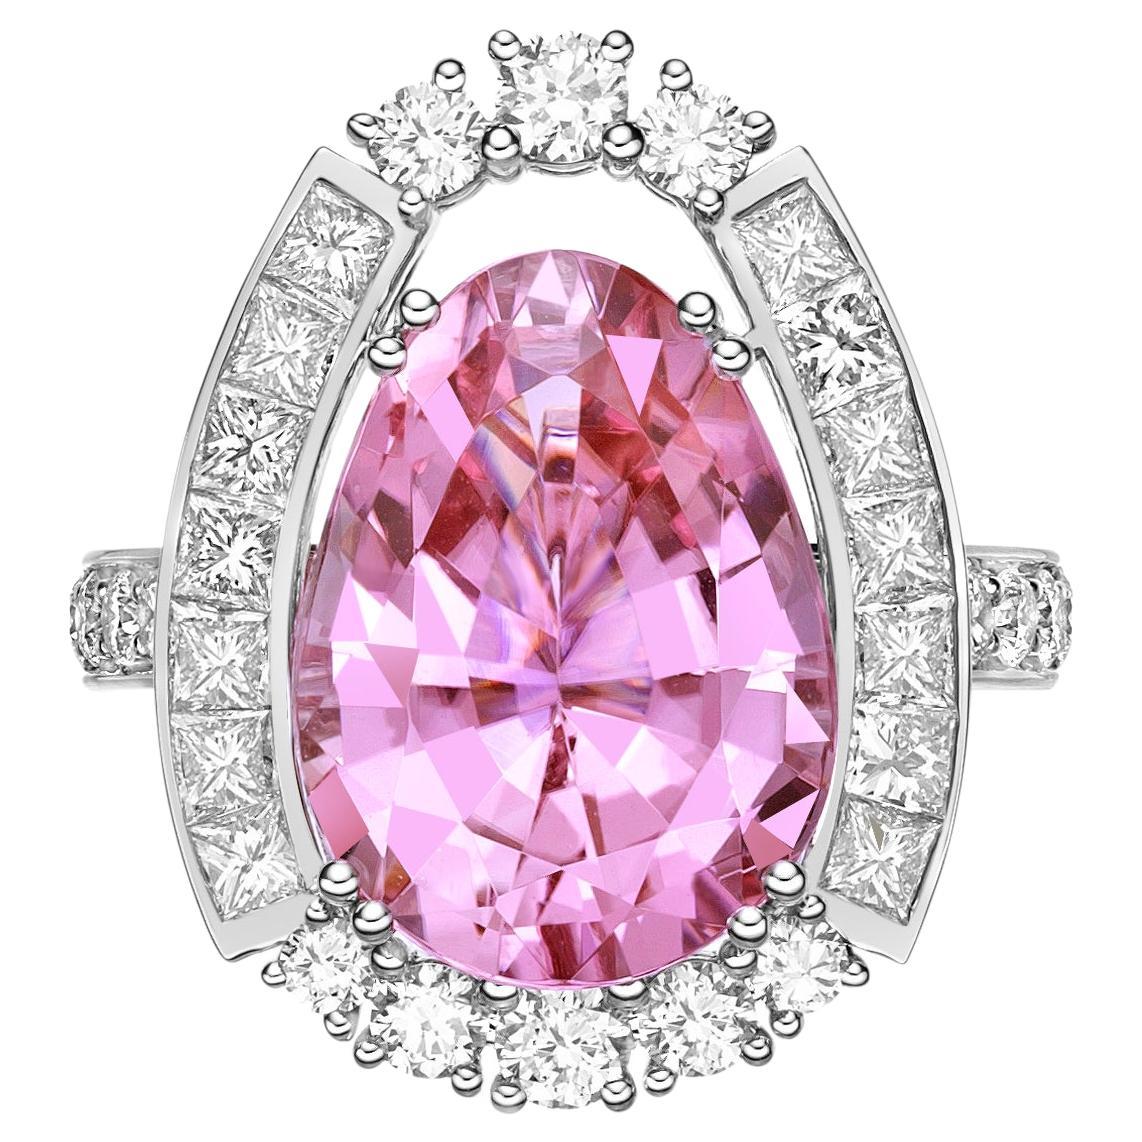 7.77 Carat Pink Tourmaline Ring in 18Karat White Gold with Diamond. 